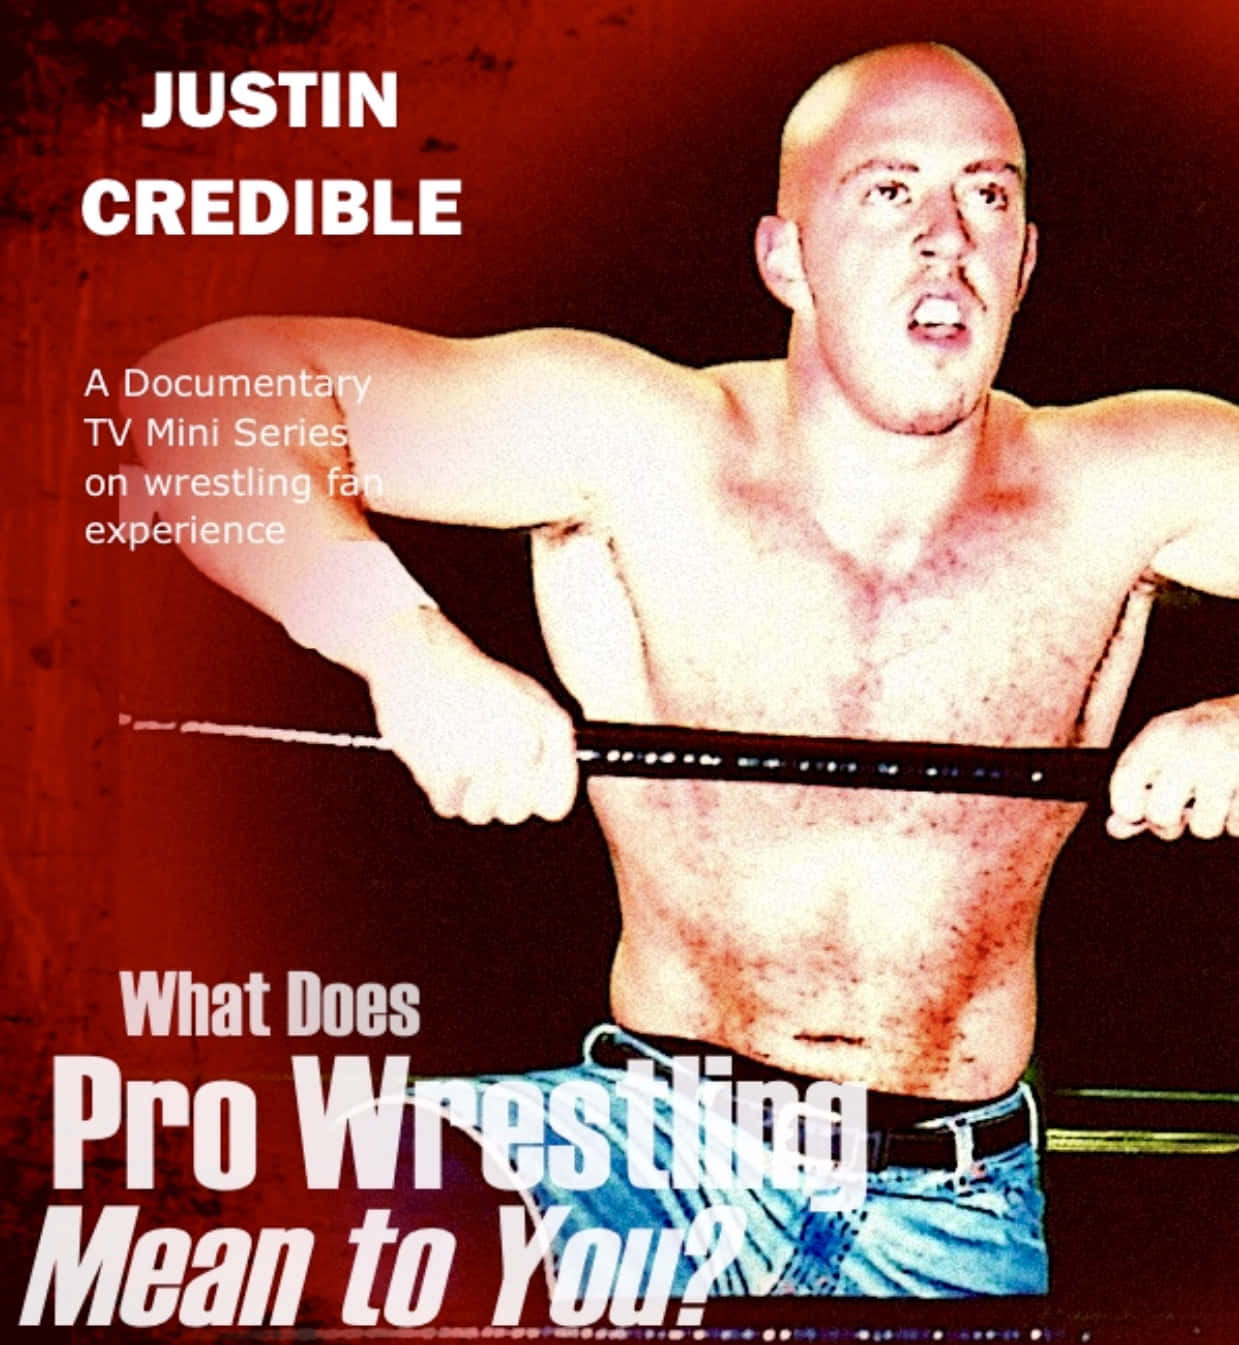 Justin Credible Wrestler Magazine Cover dækker tapetet. Wallpaper